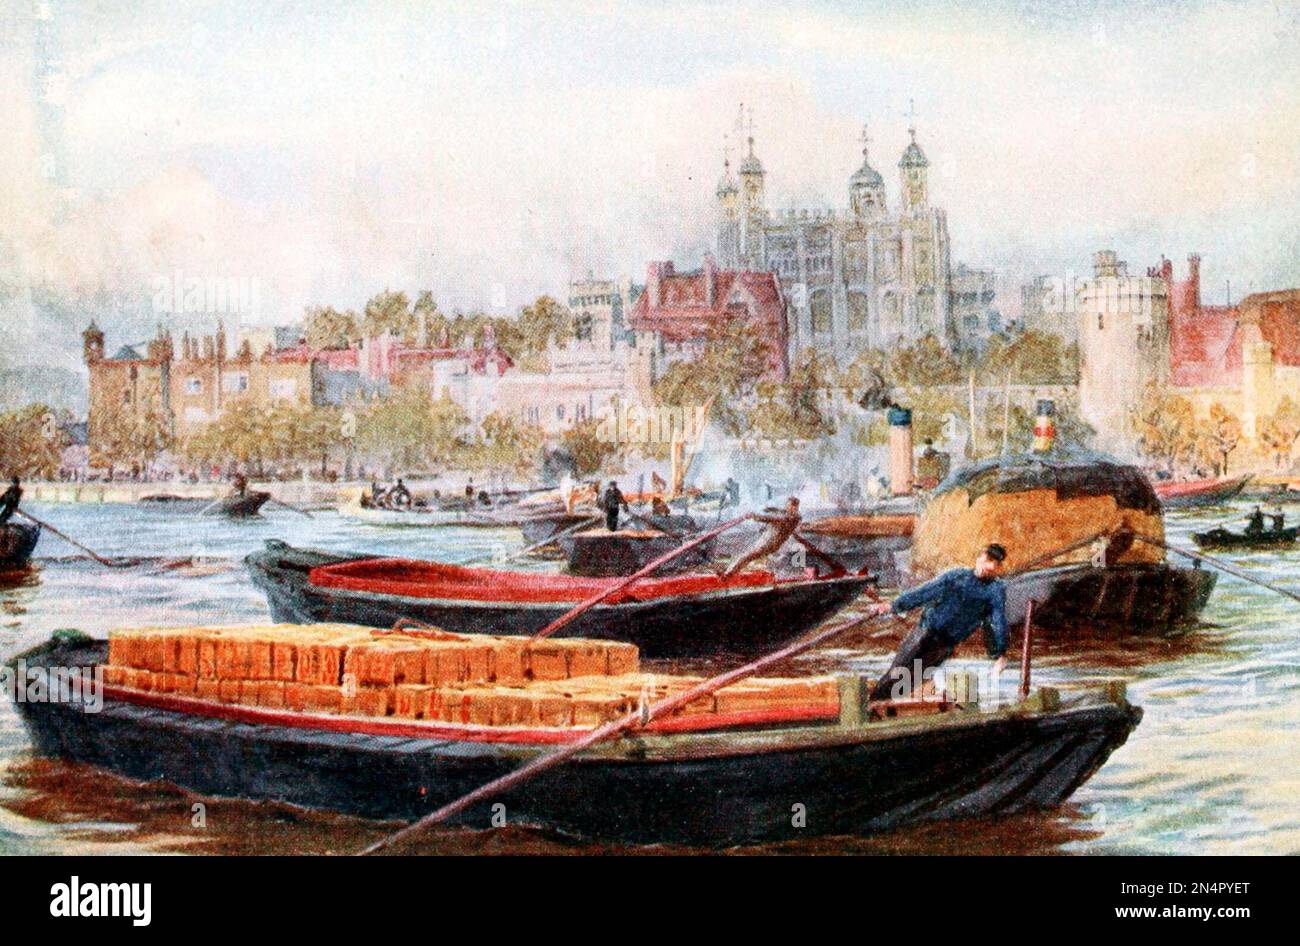 La Tour de Londres et Barges sur la Tamise, Londres, Angleterre, 1903 Banque D'Images